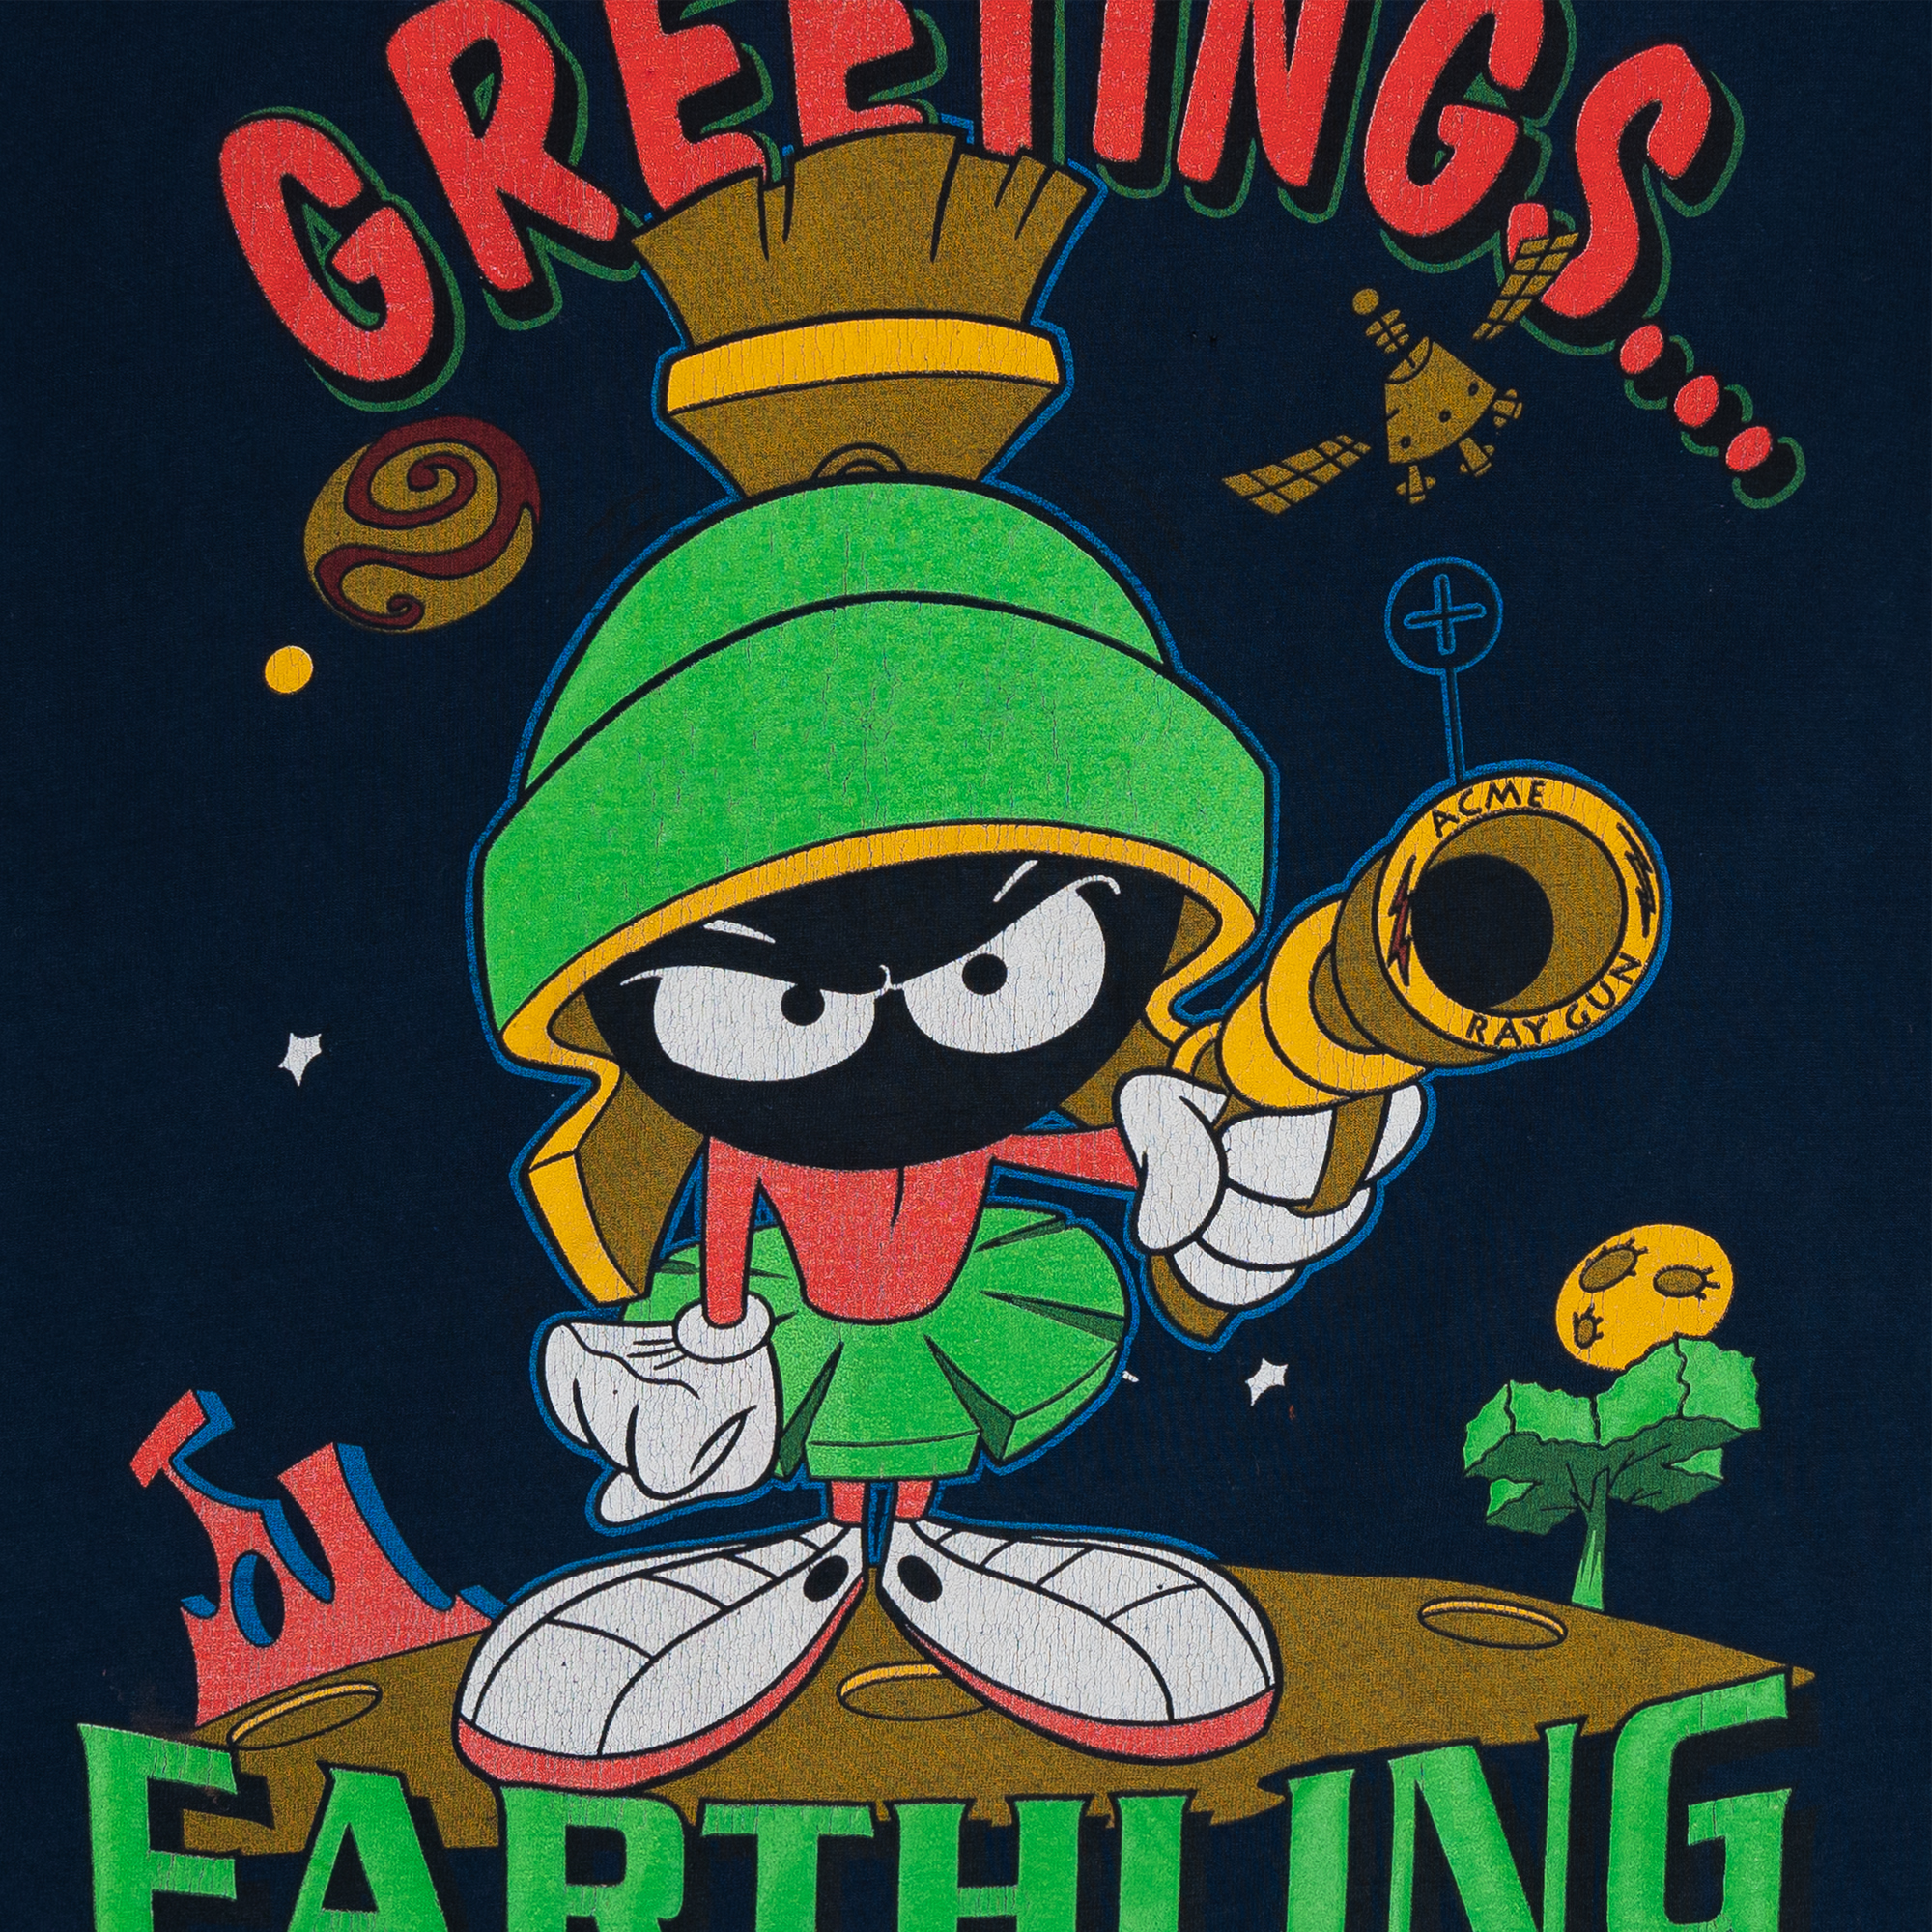 Marvin The Martian "Greetings Earthling" Warner Bros 1996 Tee Navy-PLUS